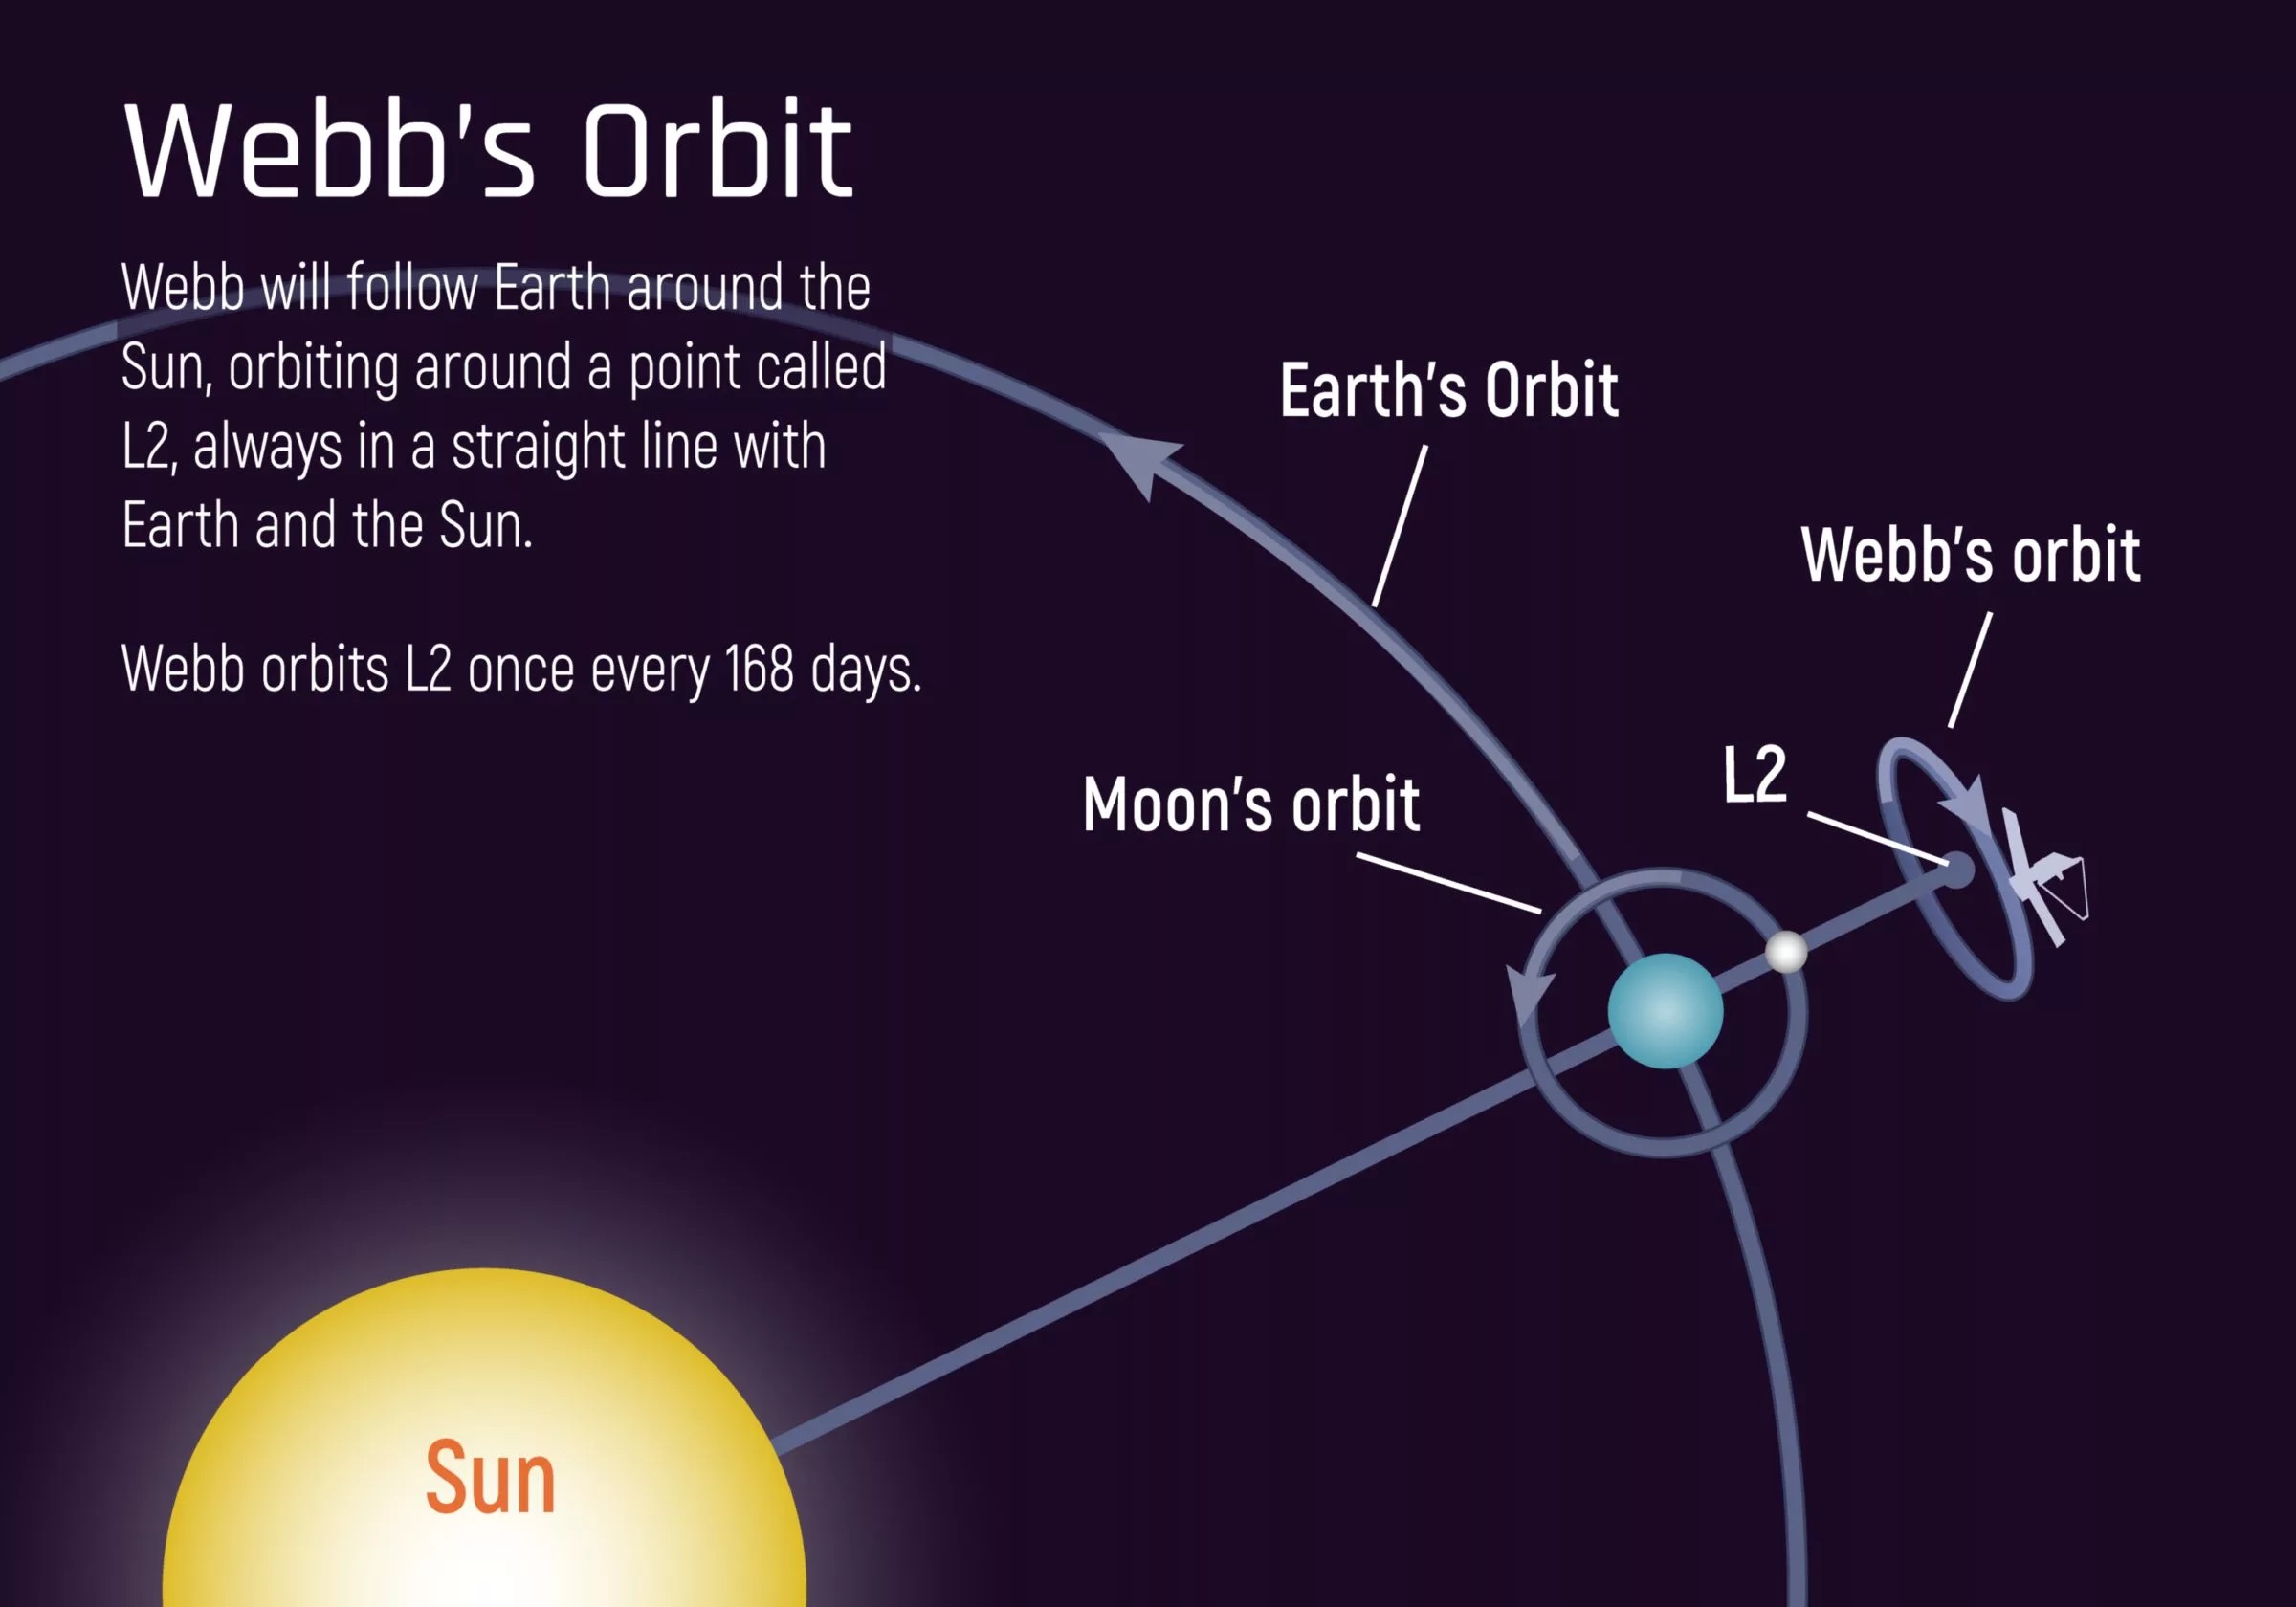 James Webb's working orbit. Credit: NASA